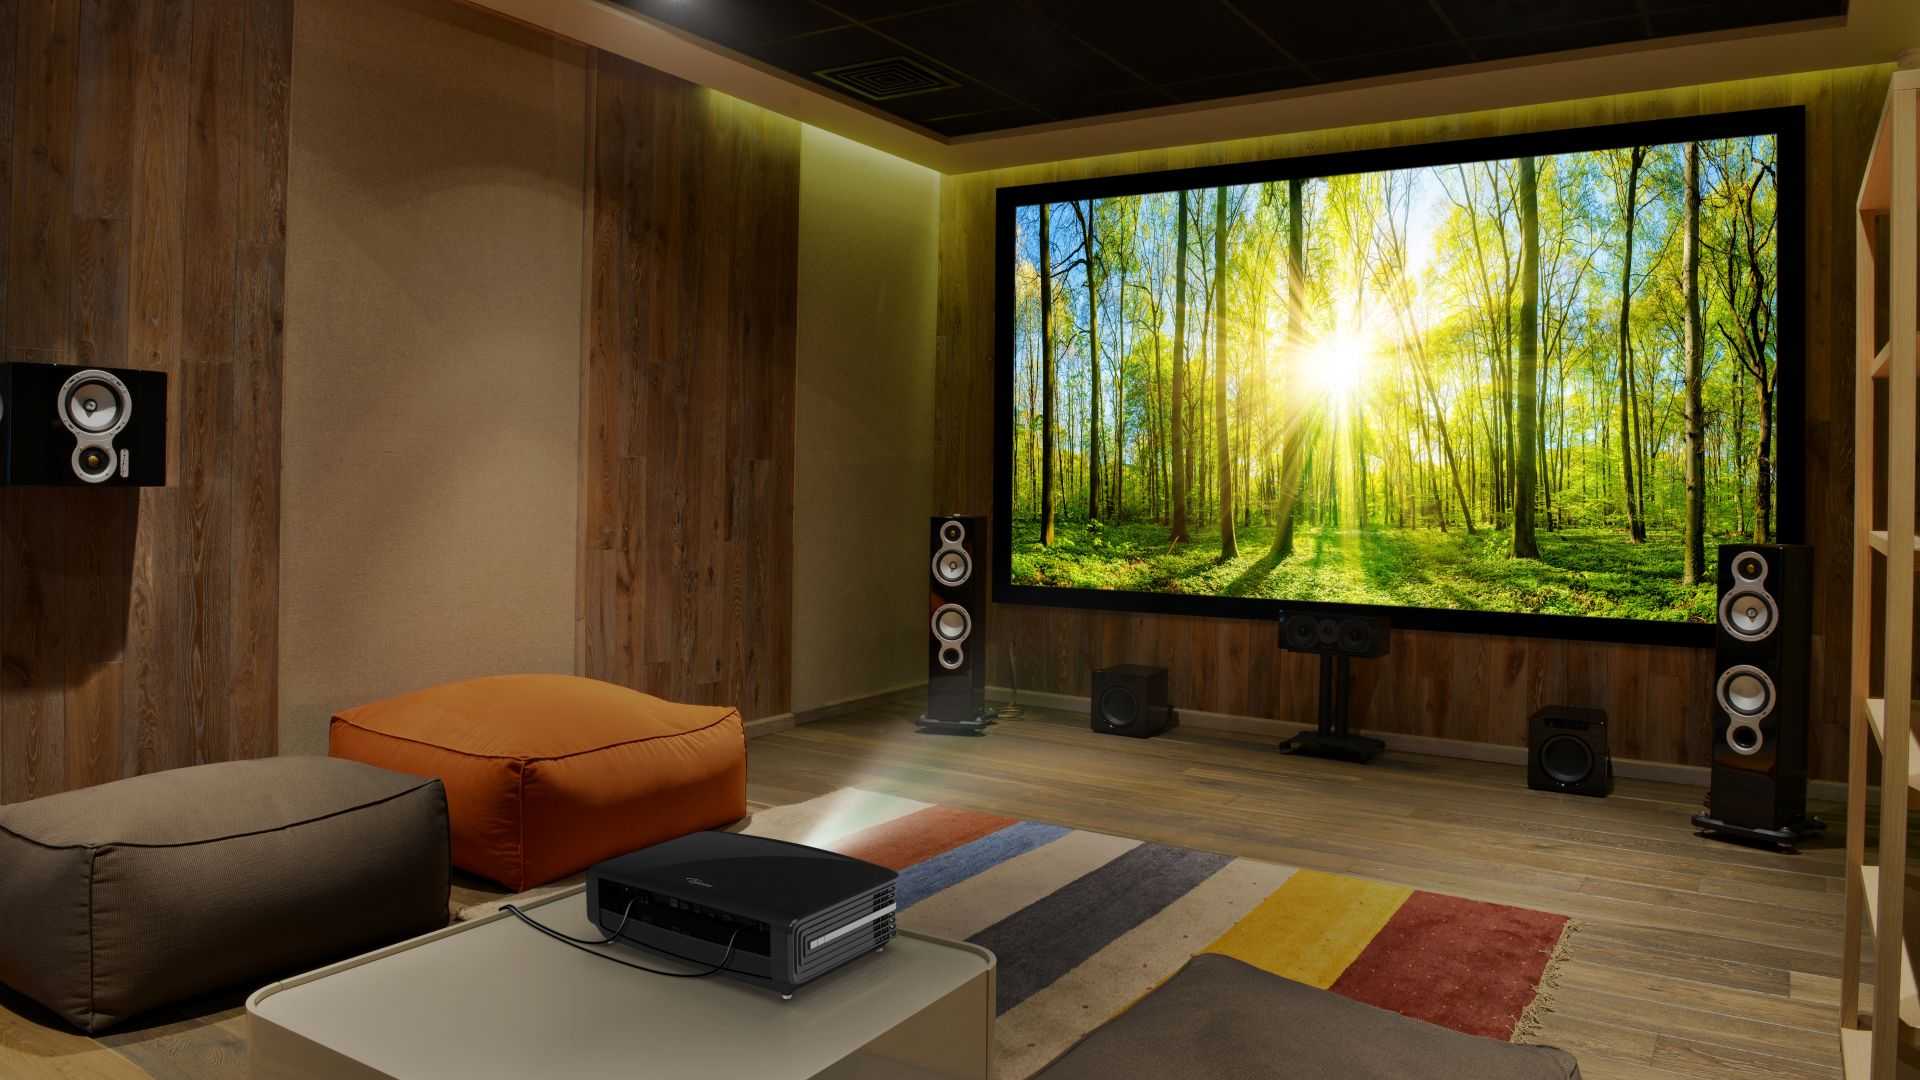 Проектор для дома вместо телевизора: получится ли заменить?